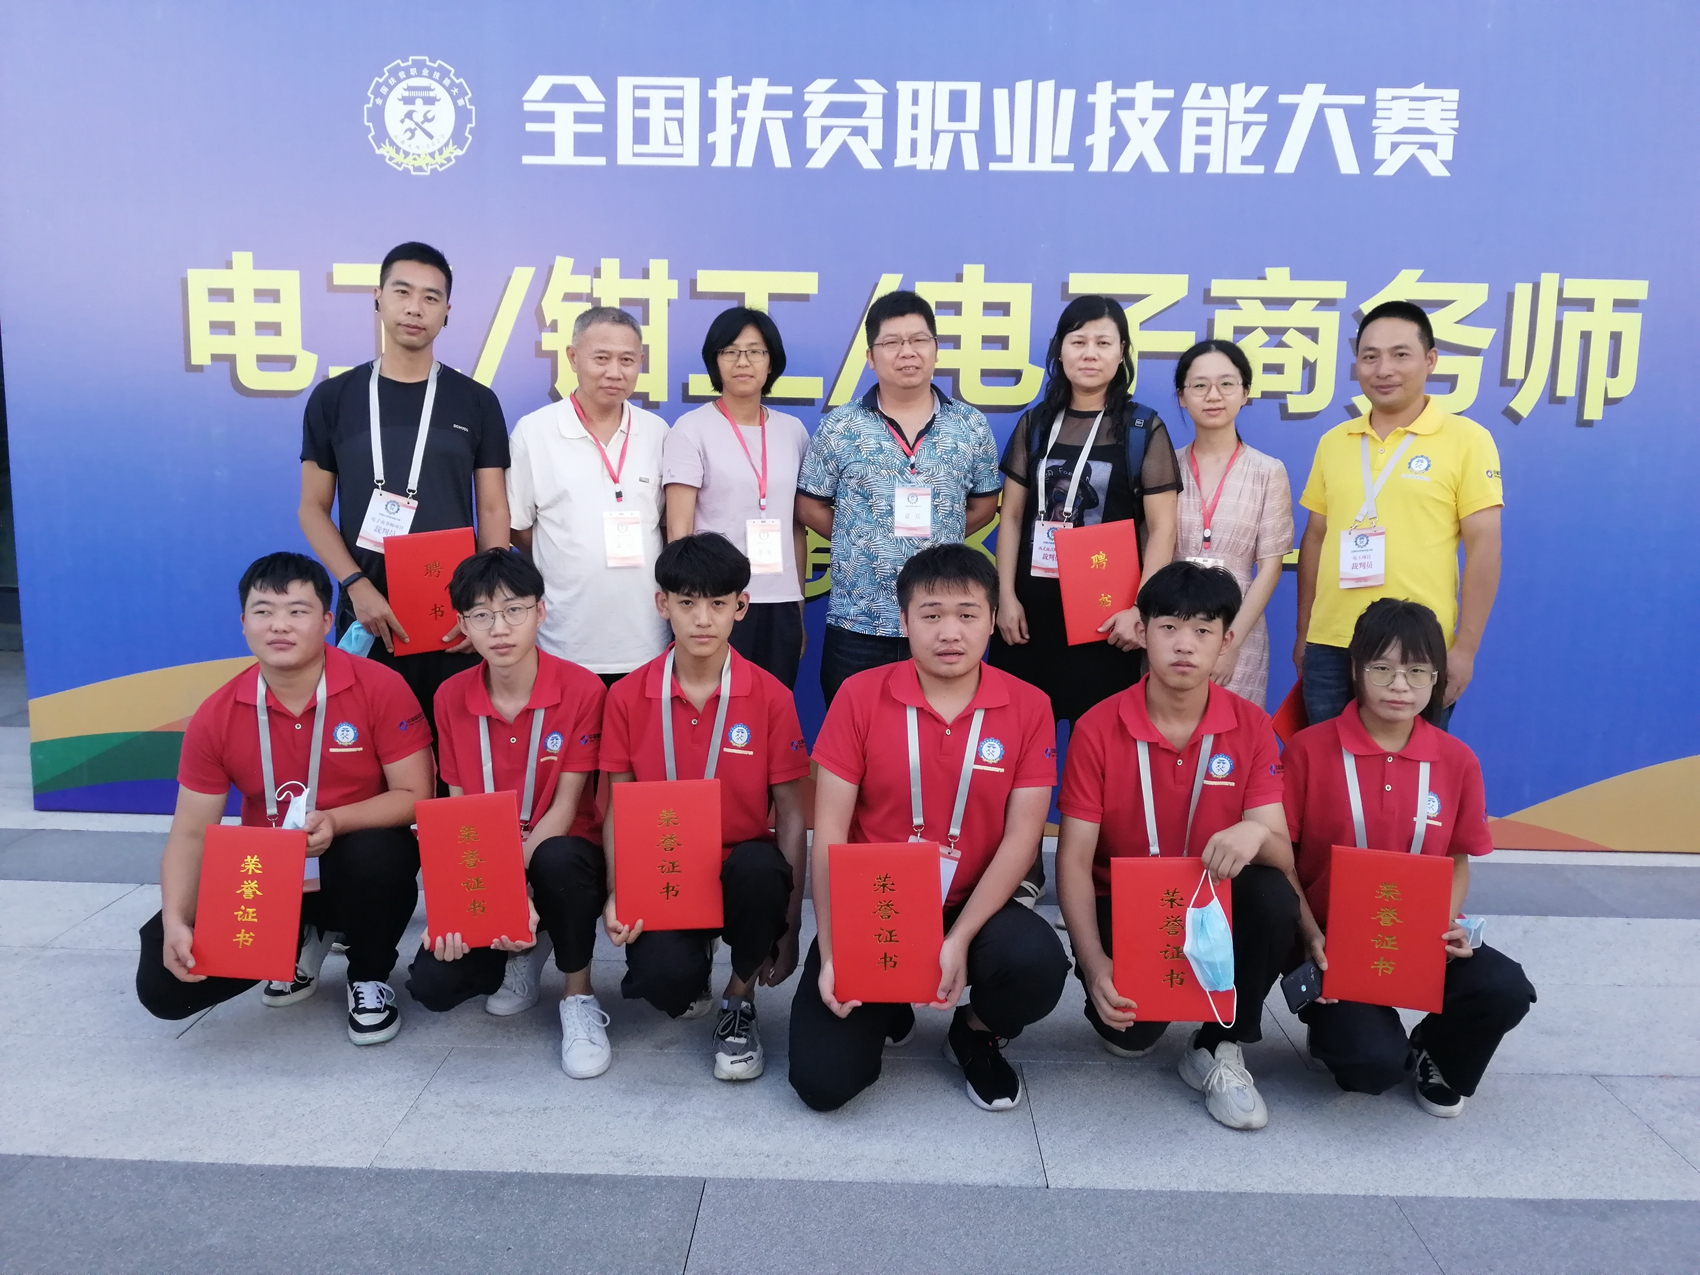 王袁同学获得全国扶贫职业技能大赛电工项目优胜奖(图2)